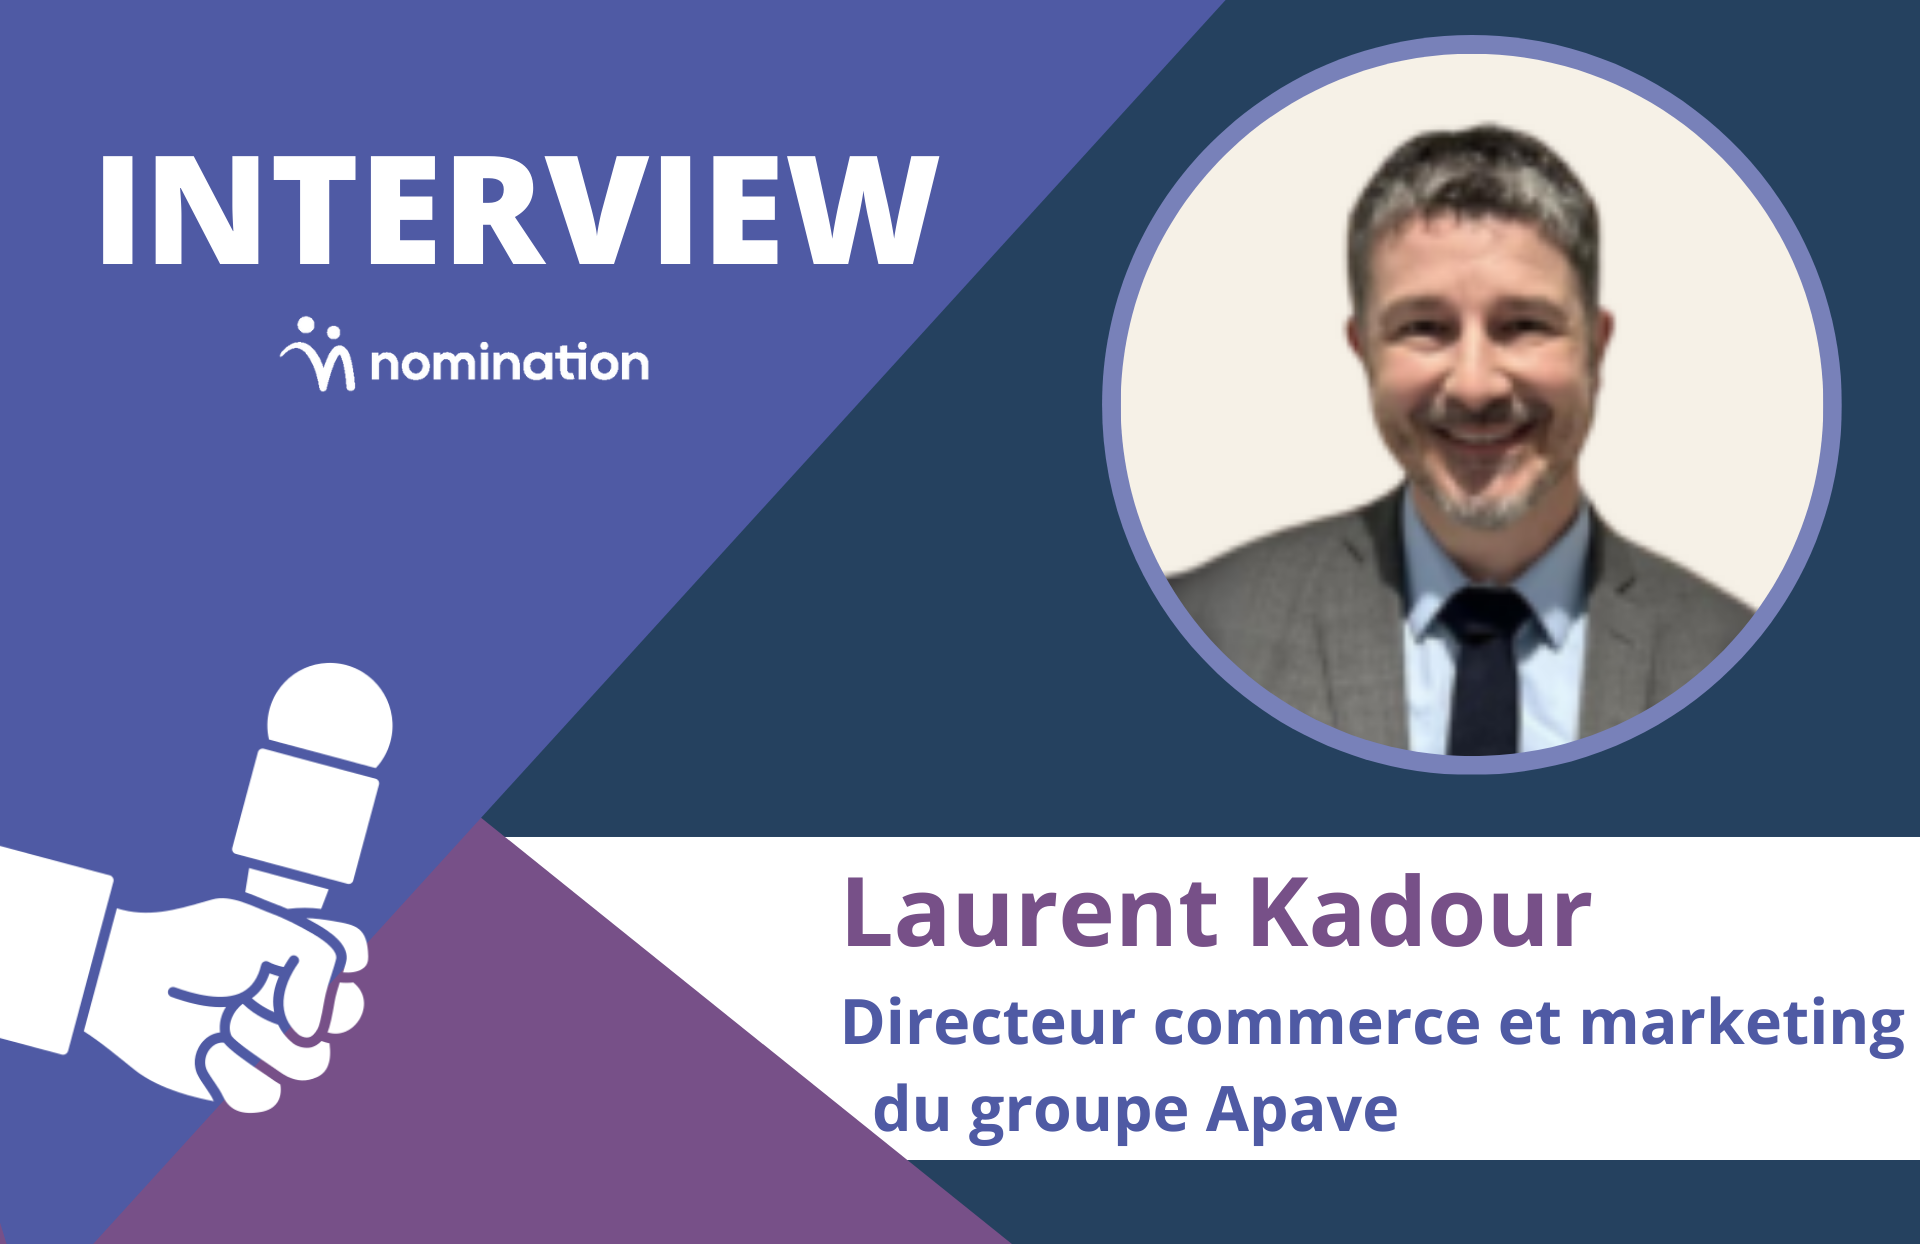 Laurent Kadour, directeur commerce et marketing du groupe Apave